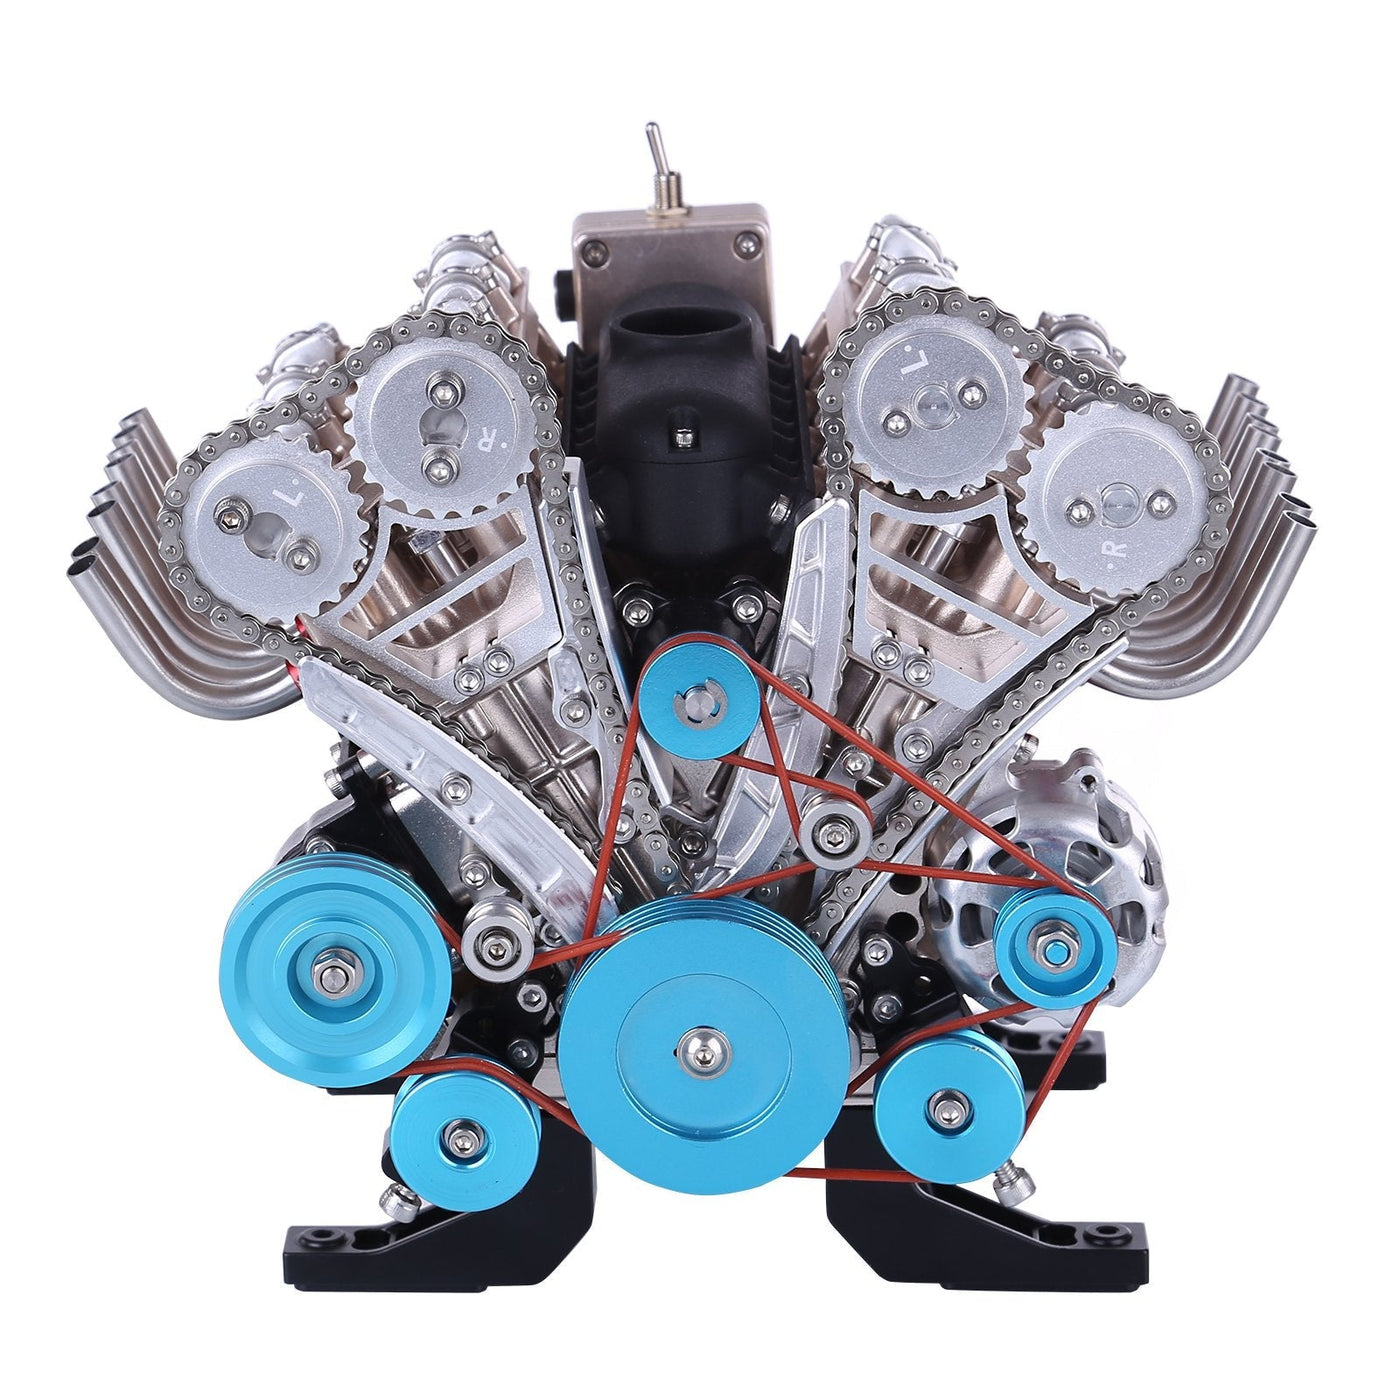 GeariX | Zelfbouw V8 motor modelbouwpakket